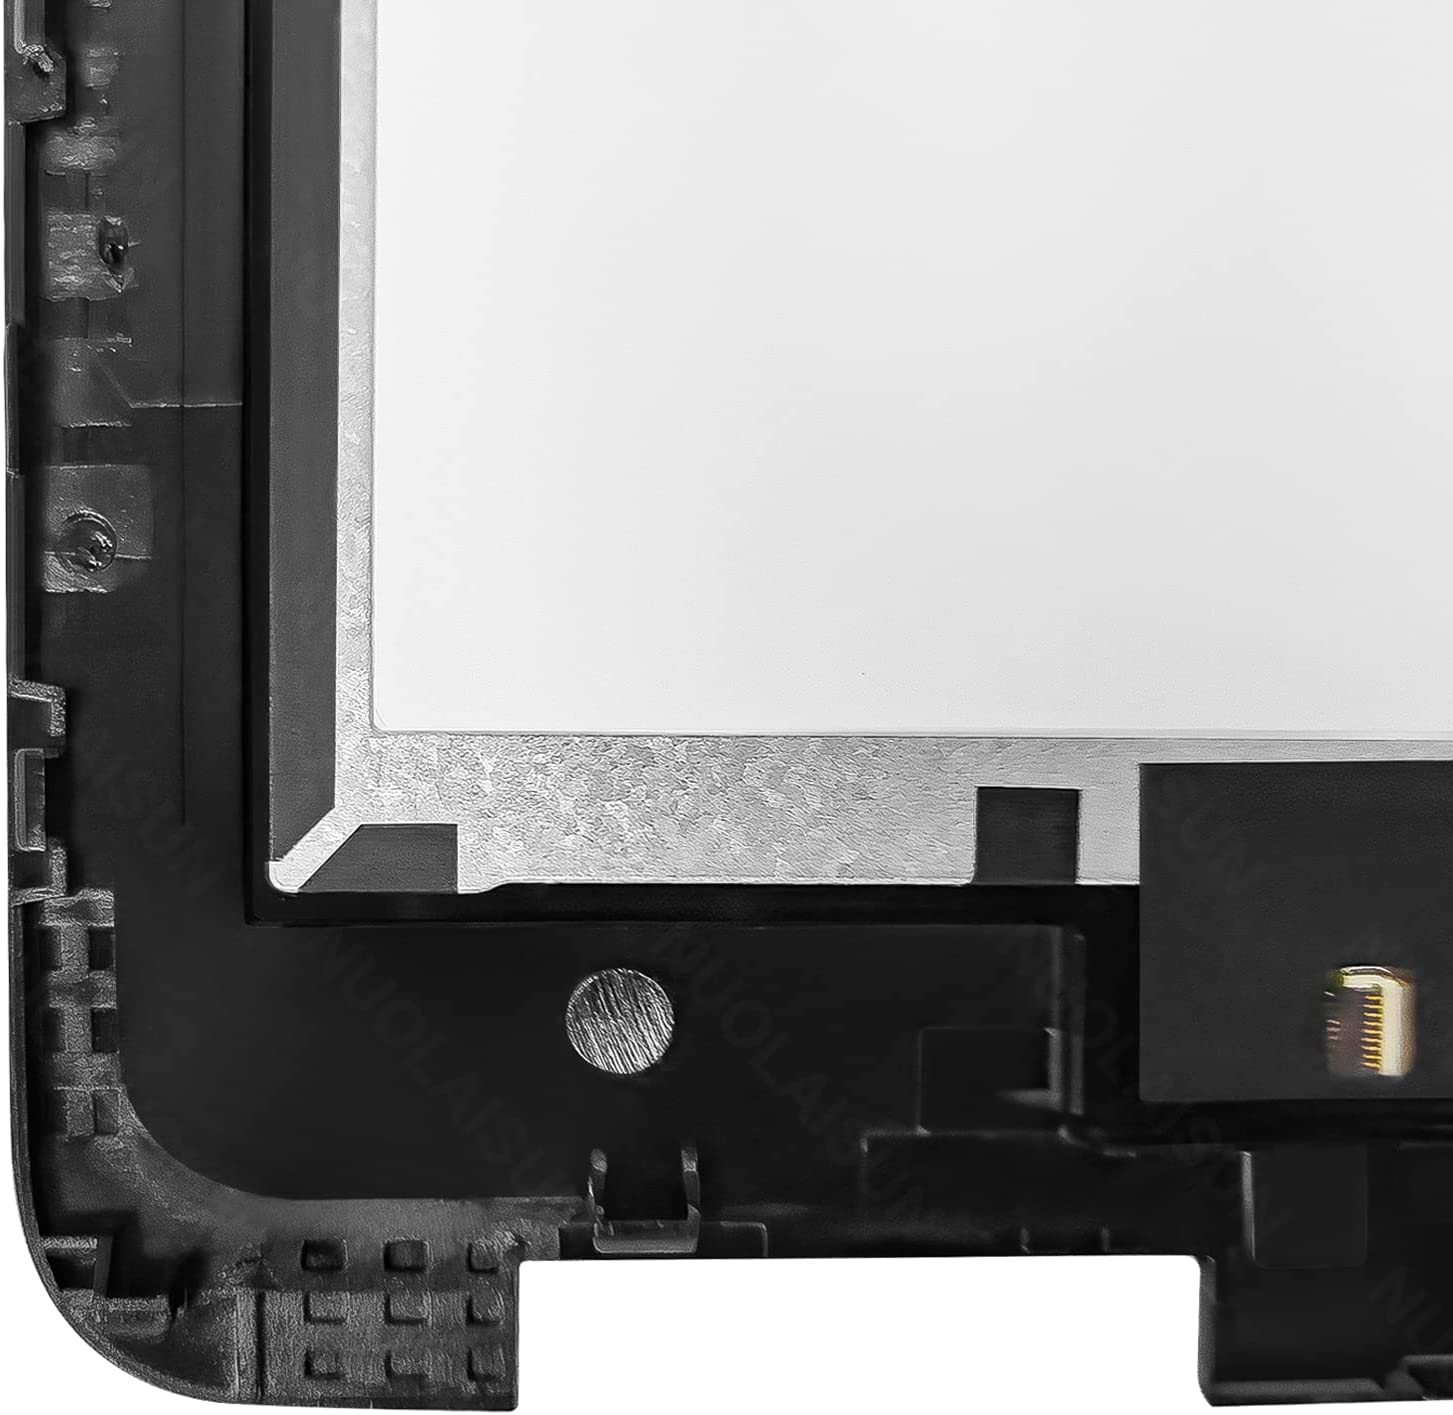 Dell ChromeBook 11 3100 üçün LCD toxunma ekranı - 3 